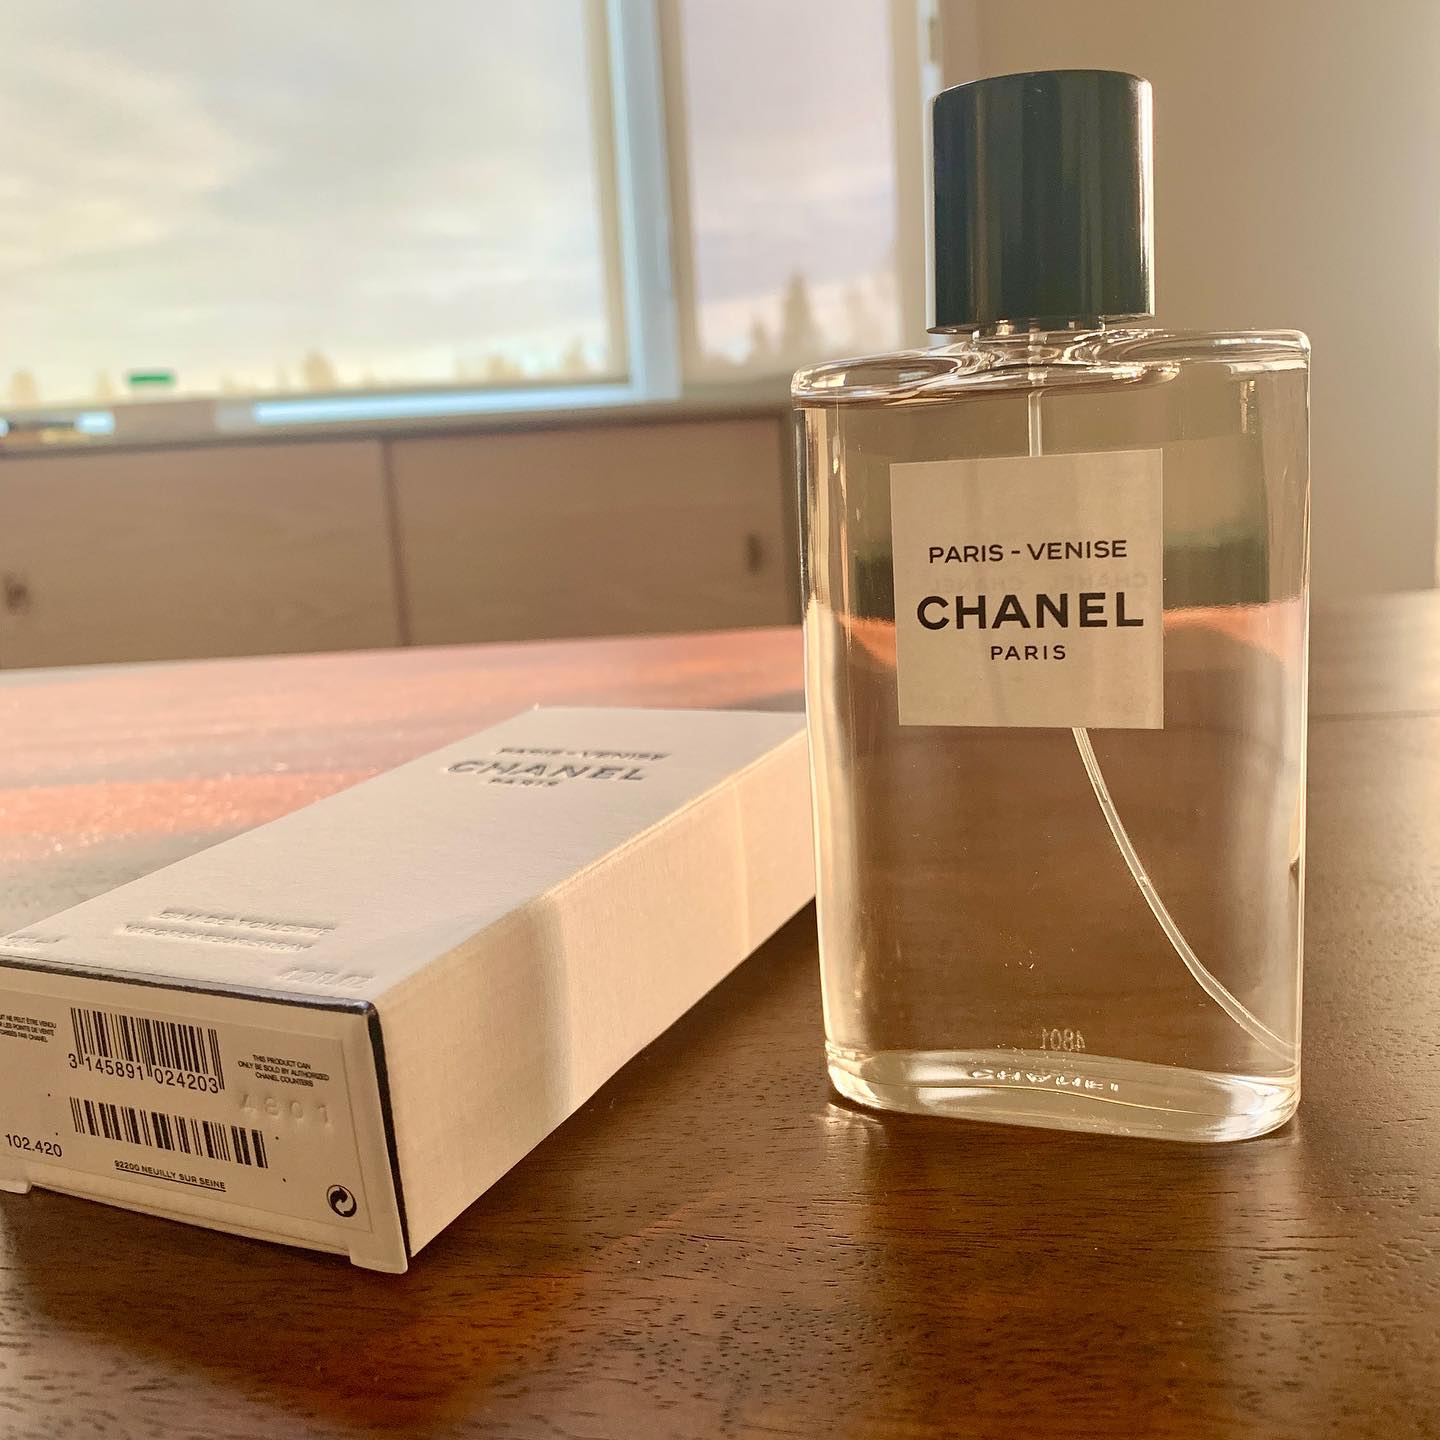 Chanel Paris-Venise Perfume Review